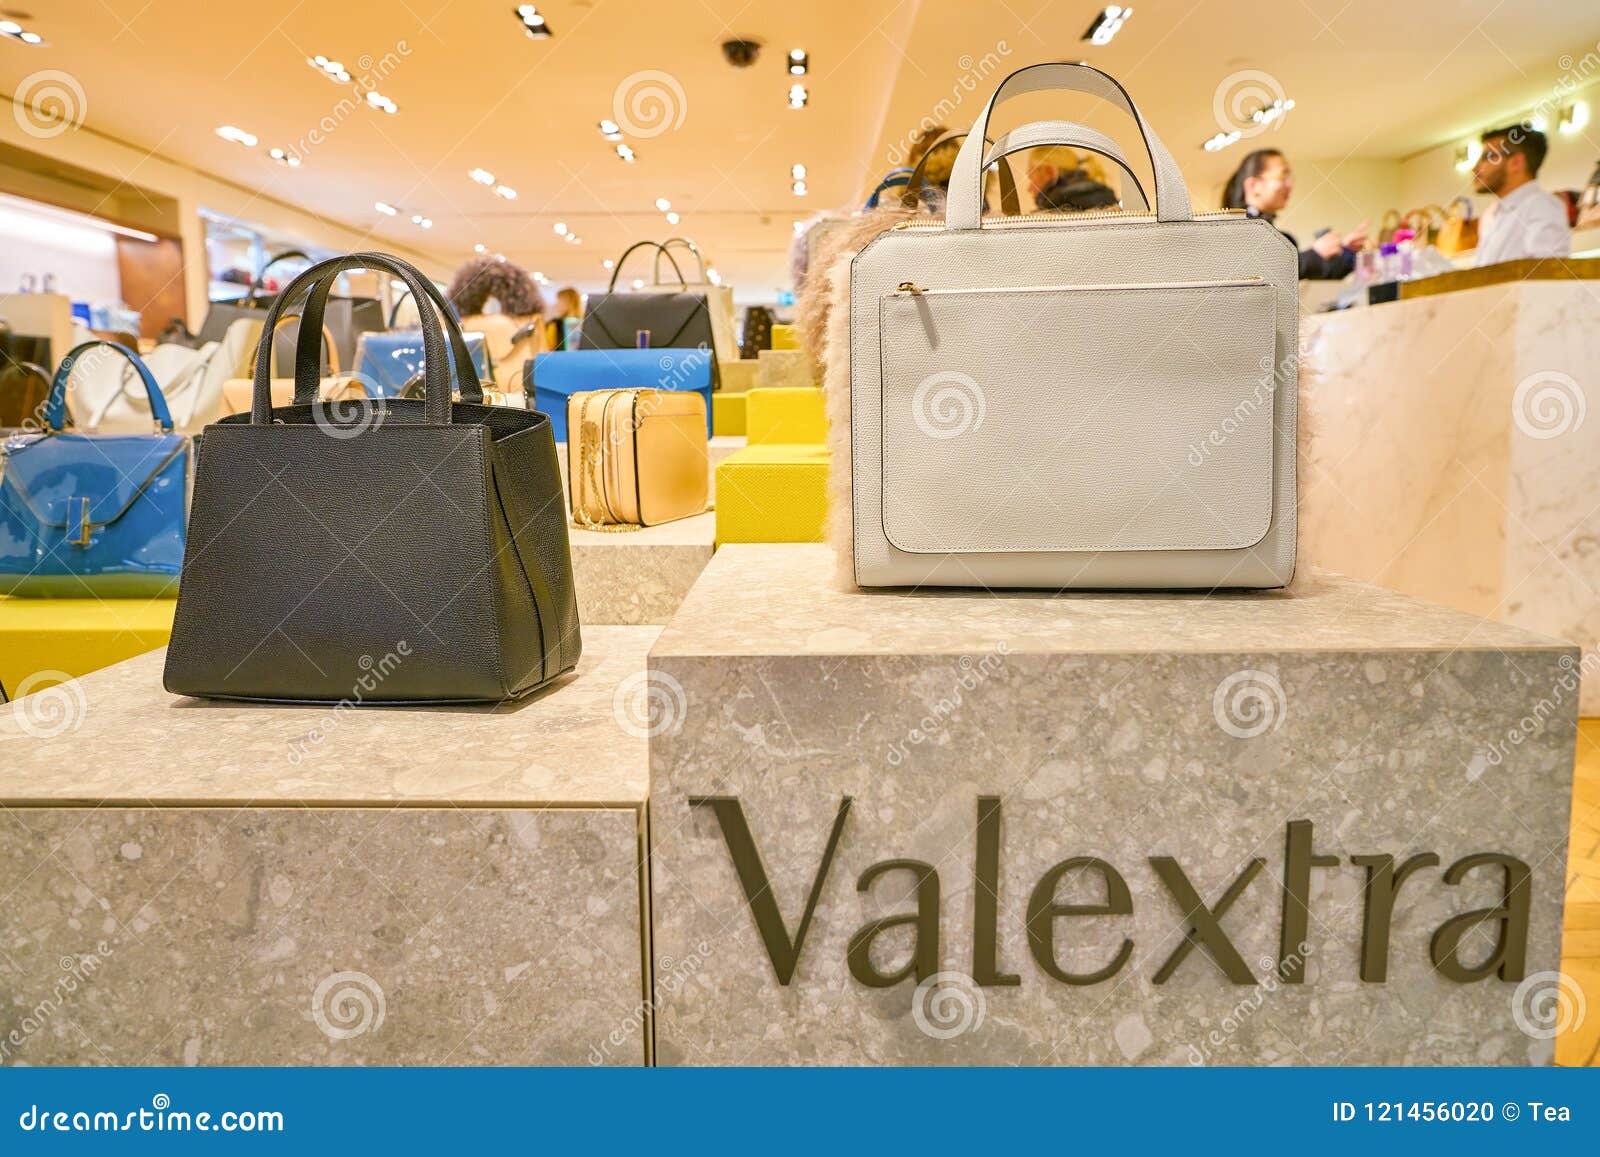 SHOPPING: Louis Vuitton Boutique, Milan, Italy Editorial